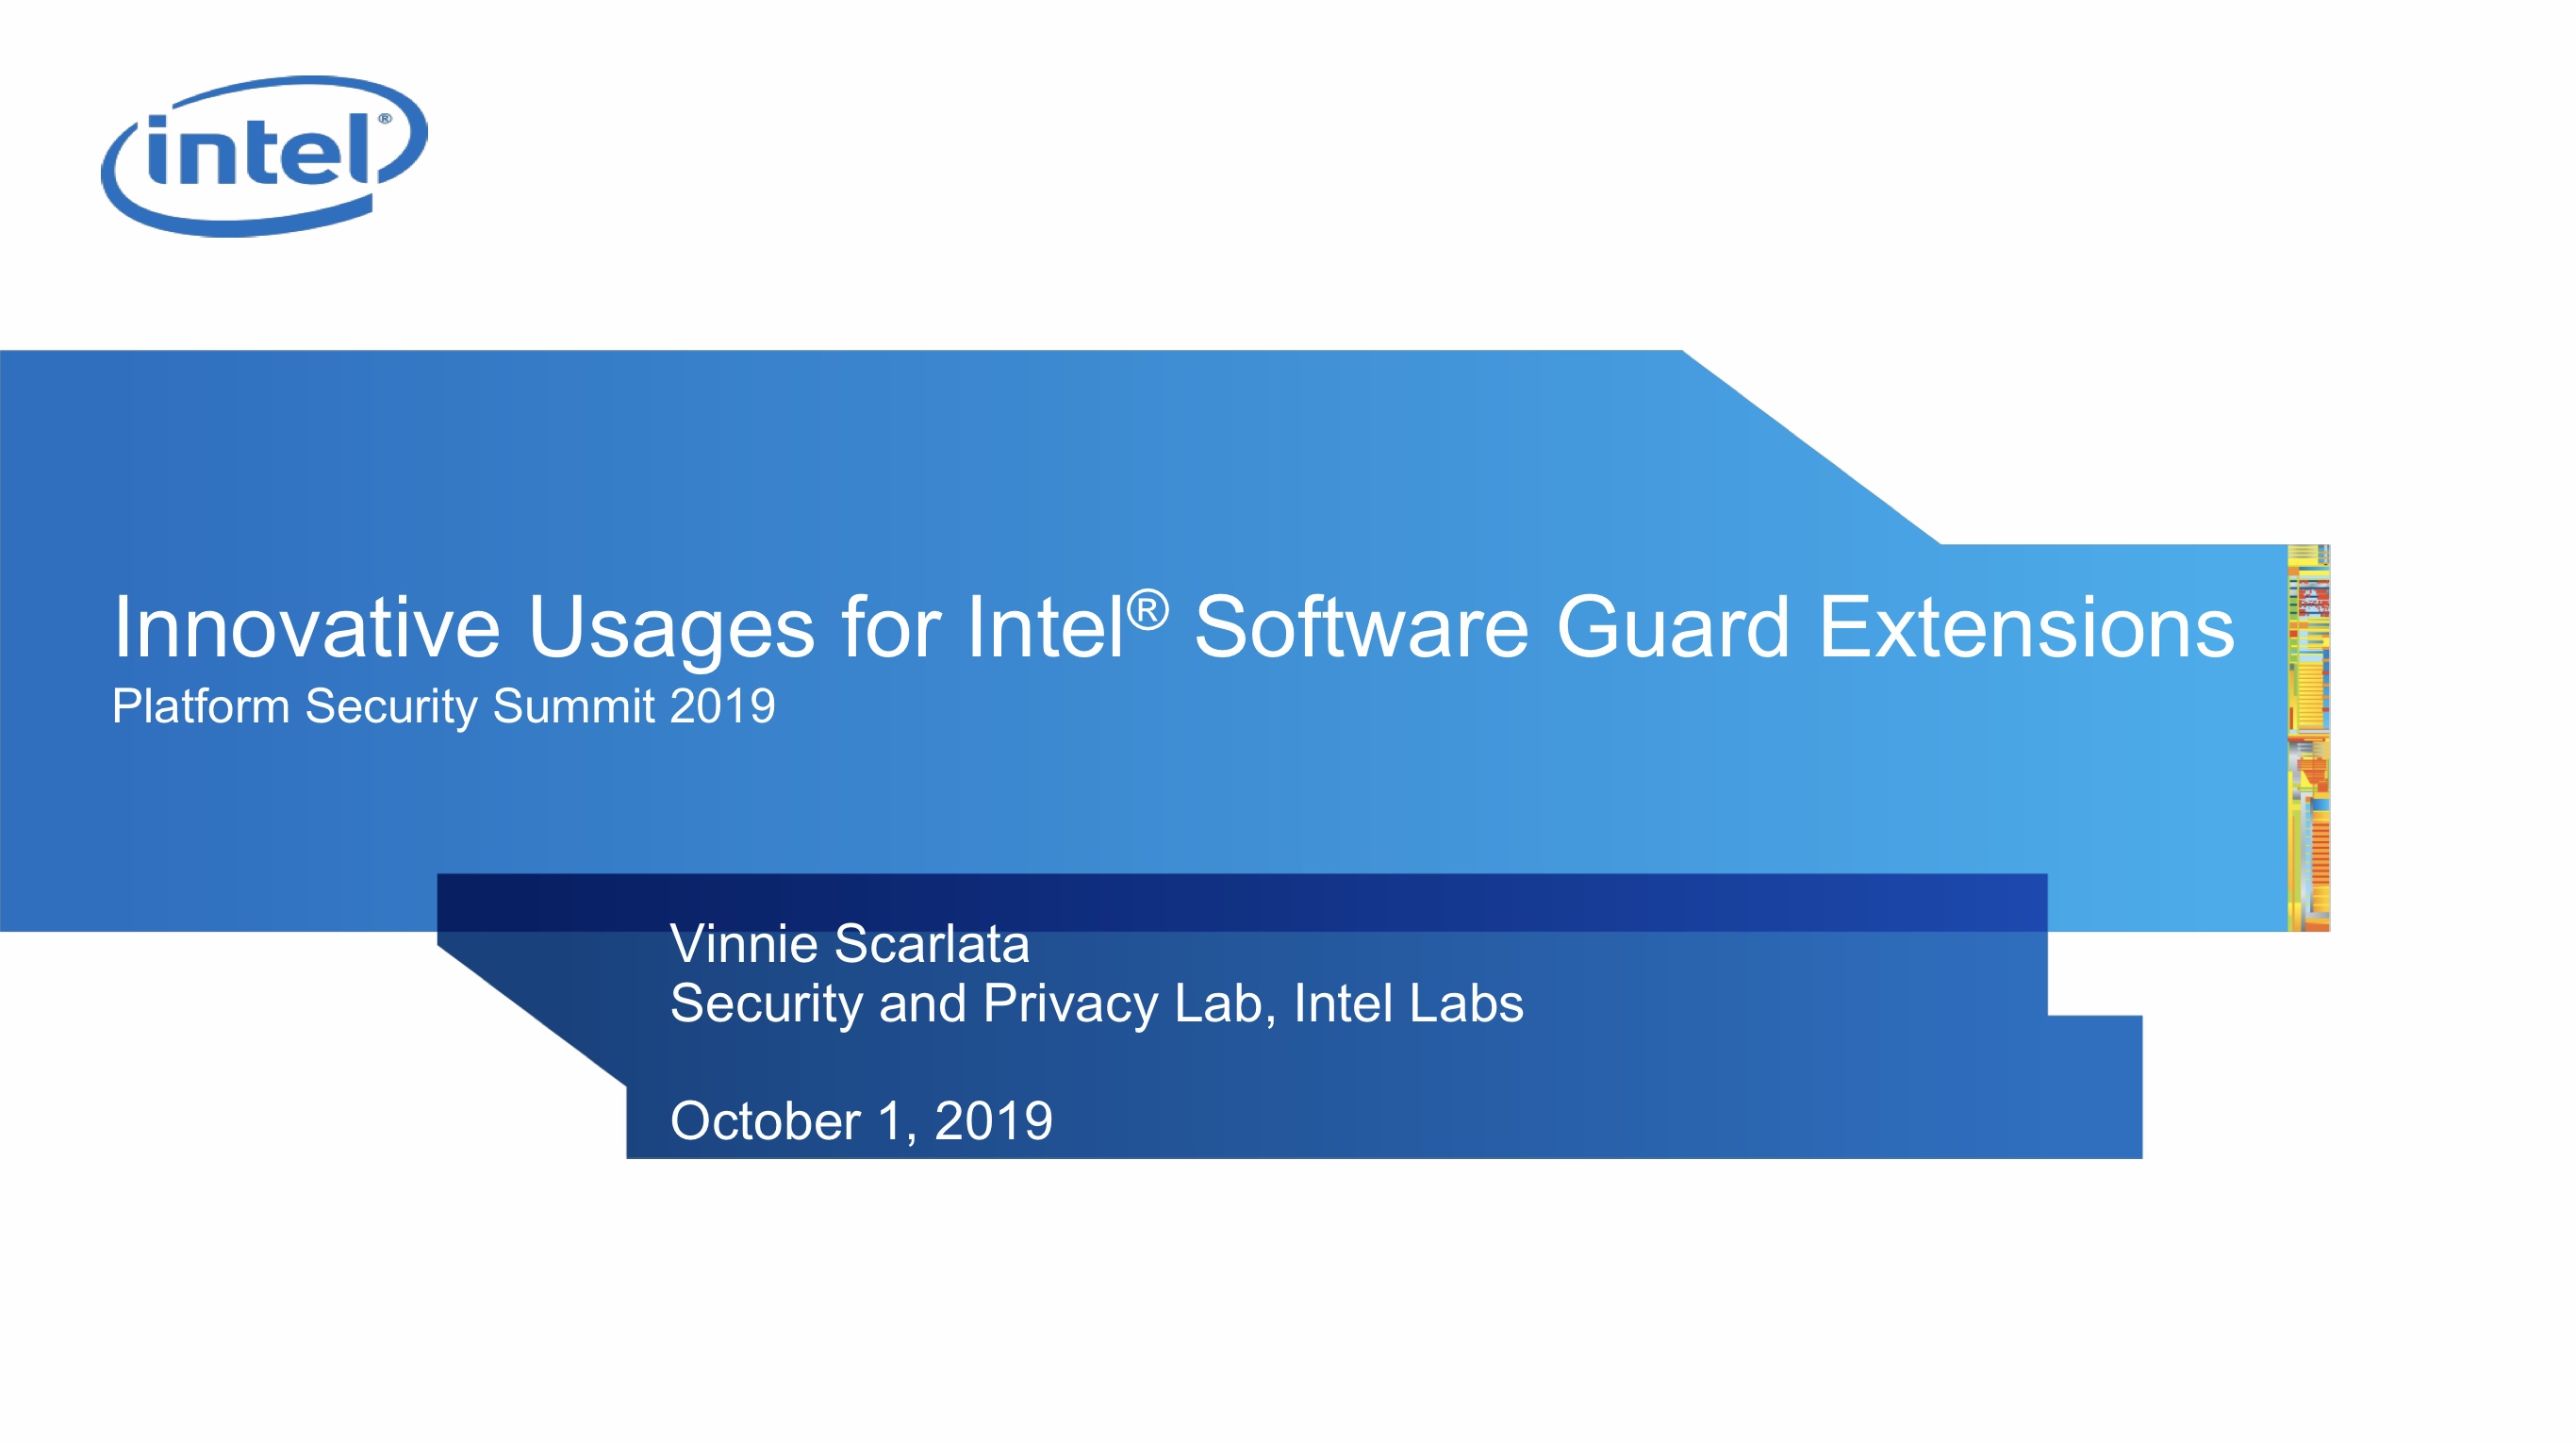 Intel extension. SW Guard Extensions SGX. Intel software Guard Extensions. Софт Intel. Intel Security Guard Extensions.